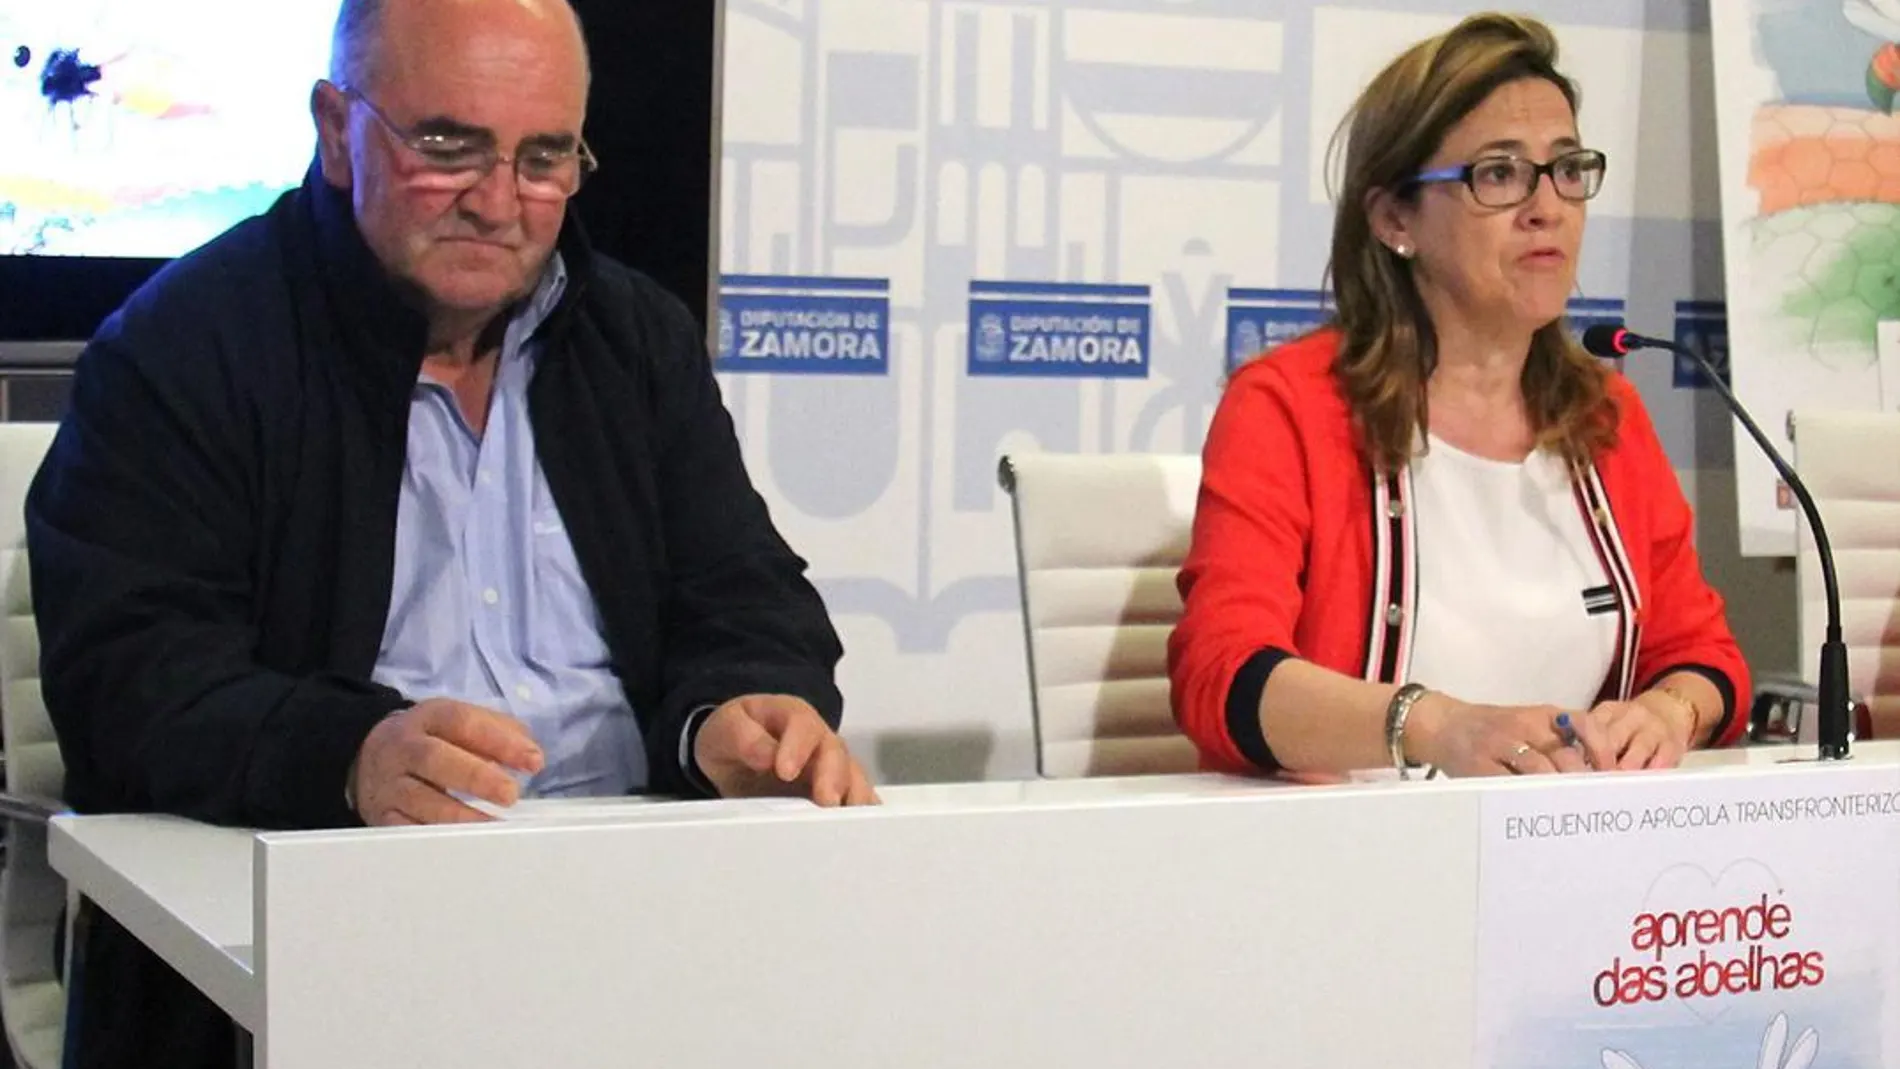 La presidenta de la Diputación de Zamora, Mayte Martín, presenta el Encuentro Apícola junto al presidente de la Federación Nacional de Apicultores de Portugal, Manuel Gonçalves